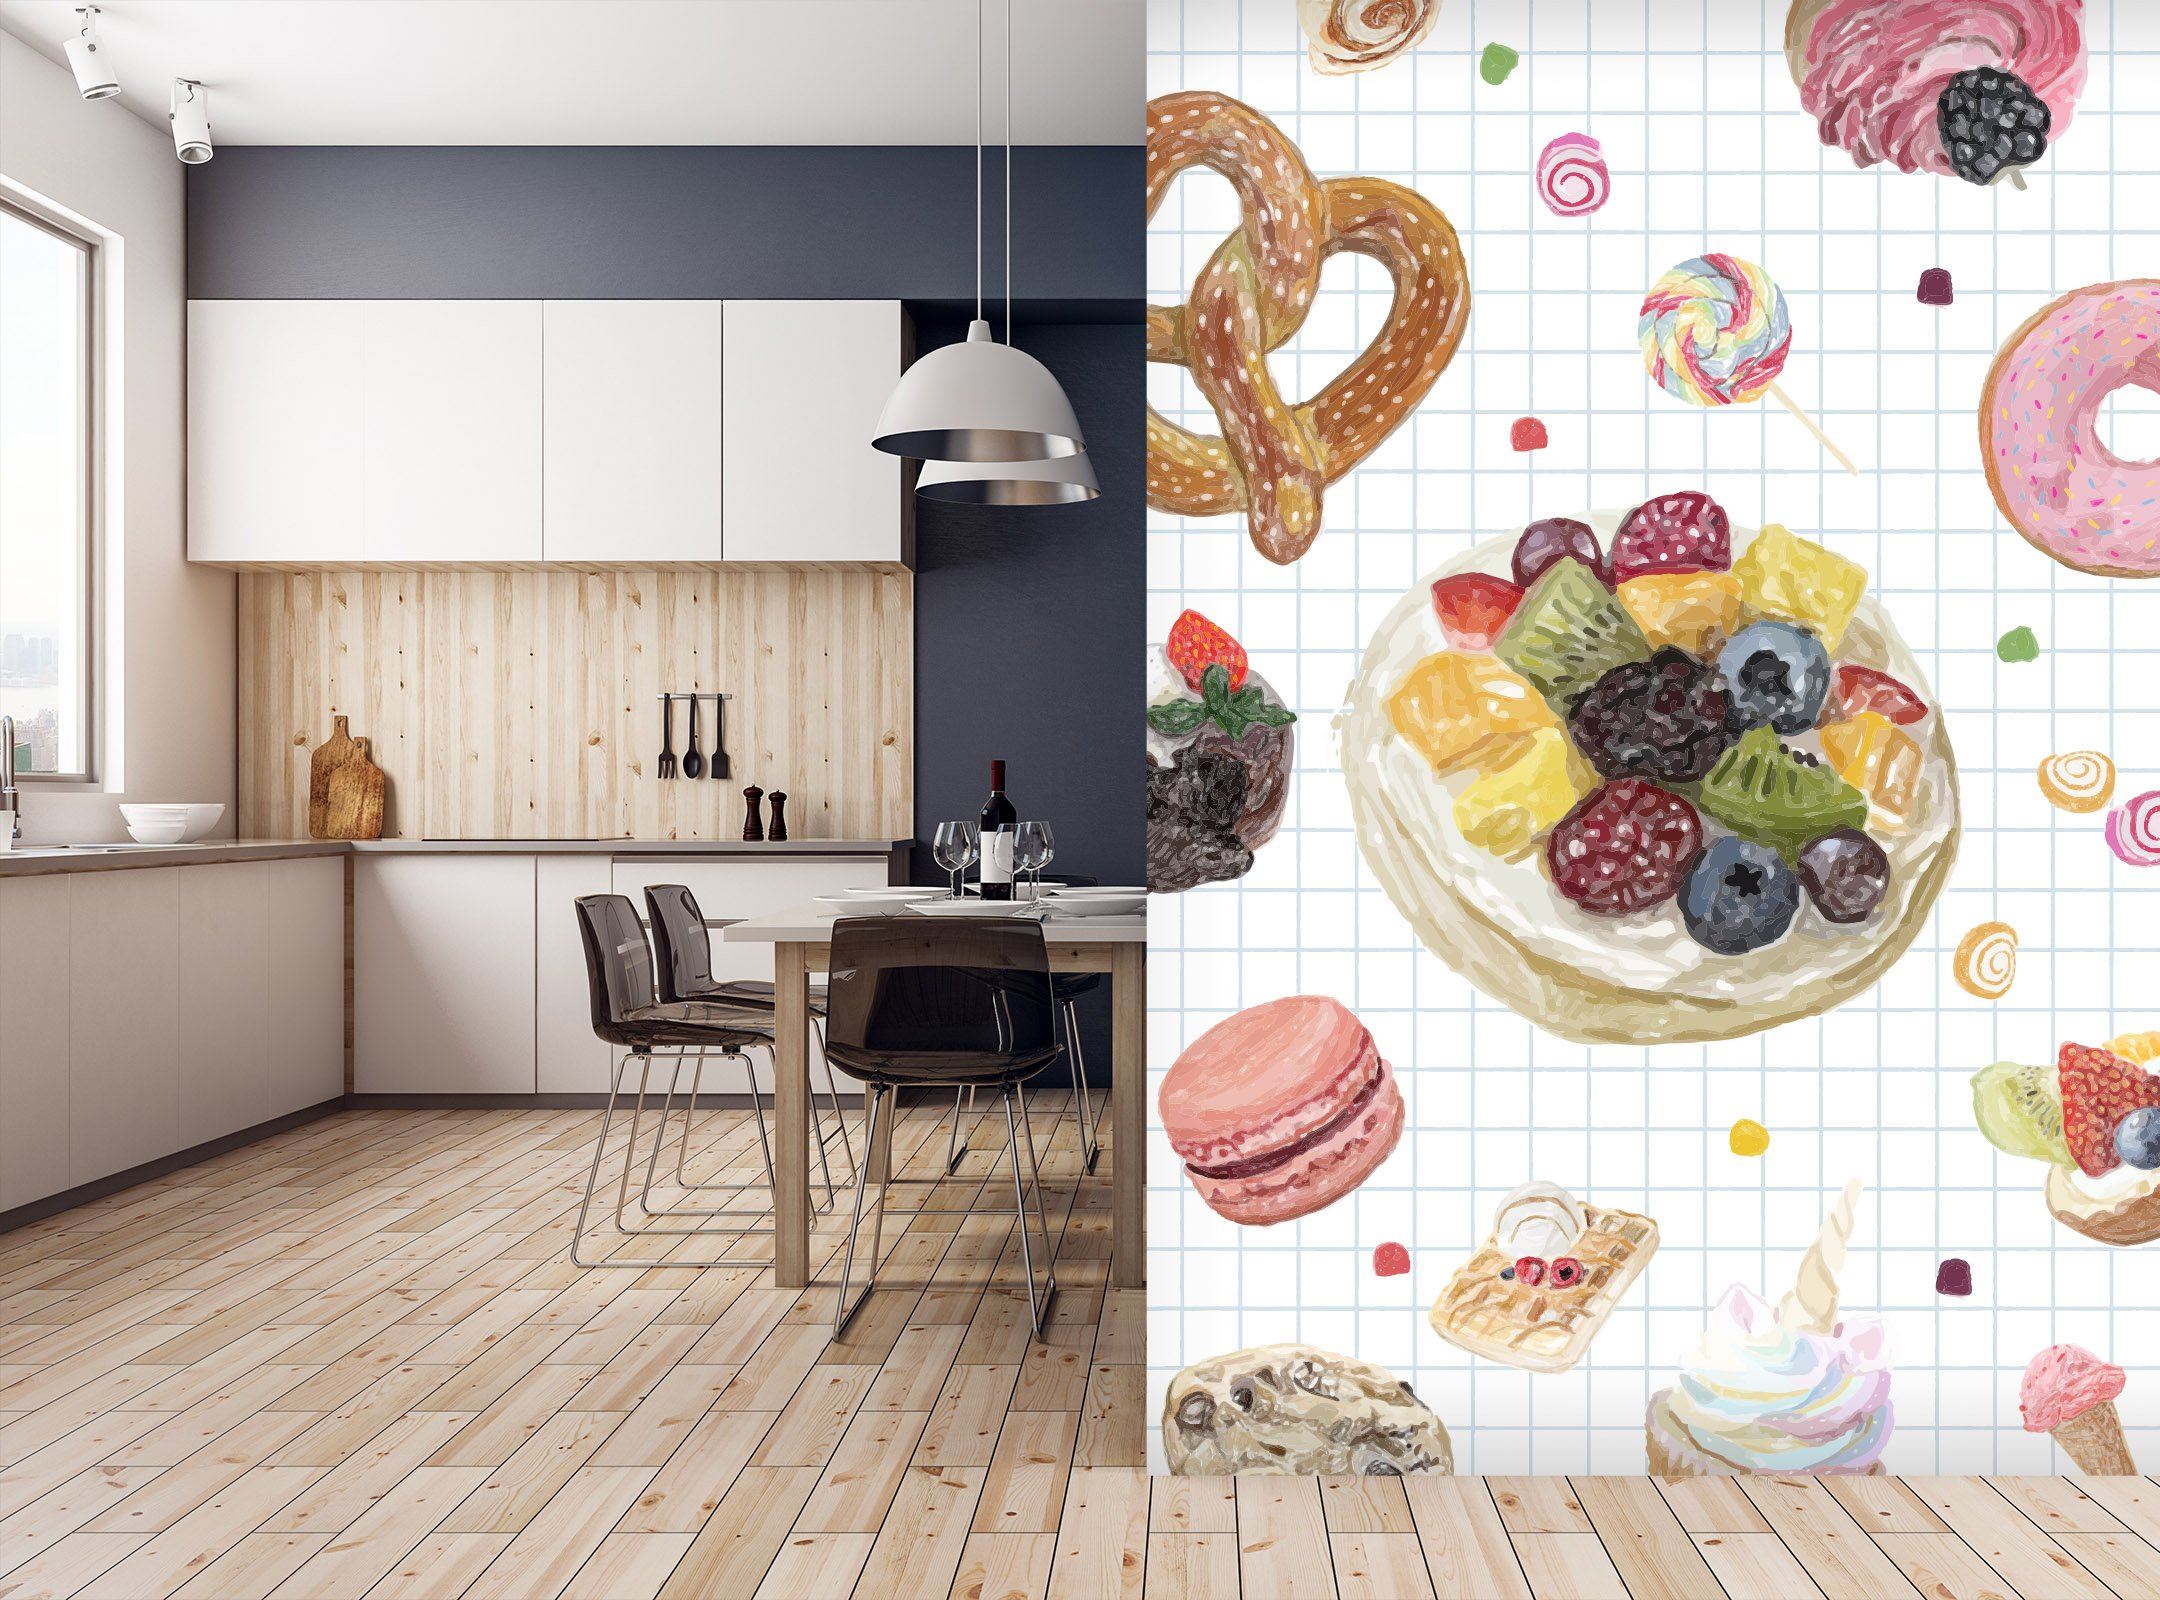 3D Fruit Cake Ice Cream 134 Wallpaper AJ Wallpaper 2 